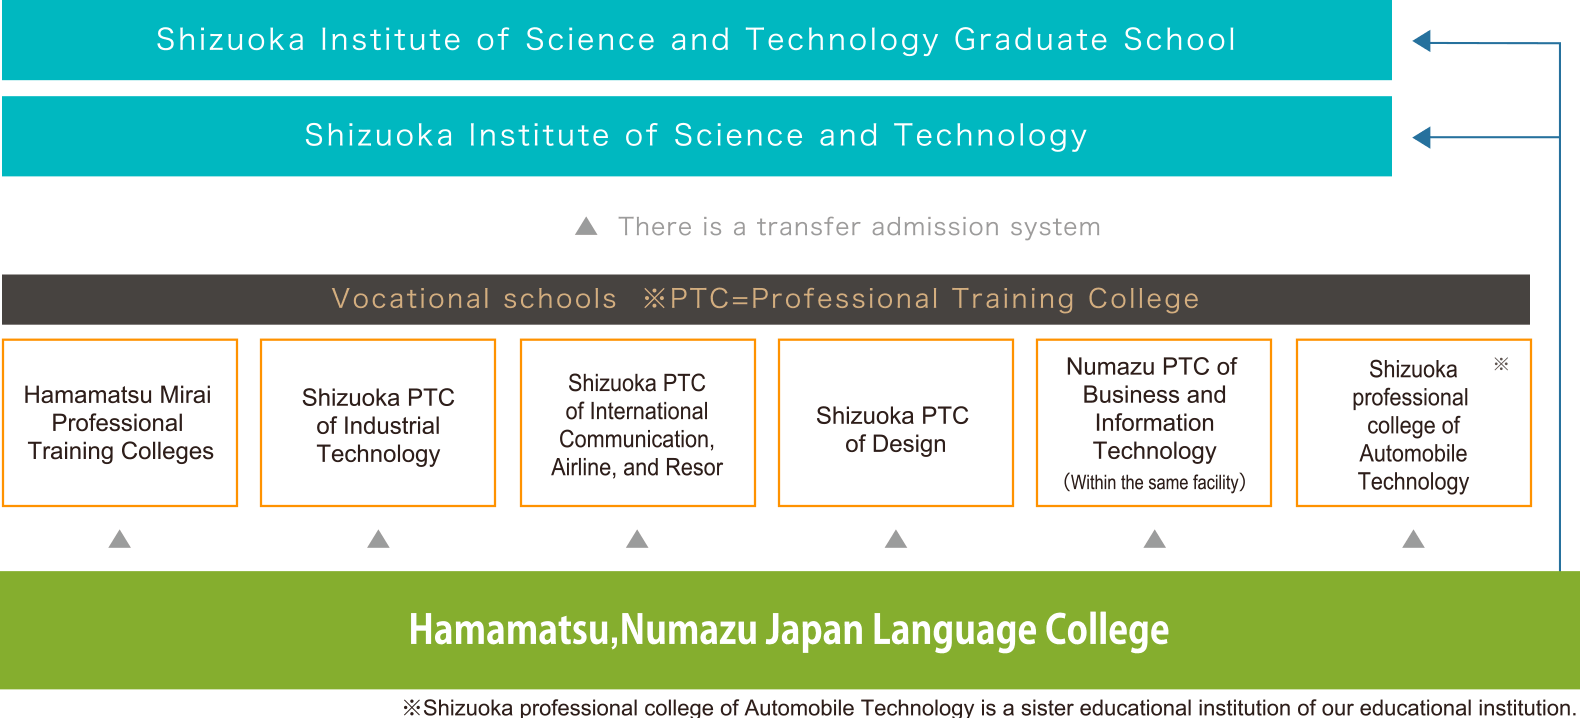 Đặc sắc của Học viện nhật ngữ Hamamatsu, Numazu